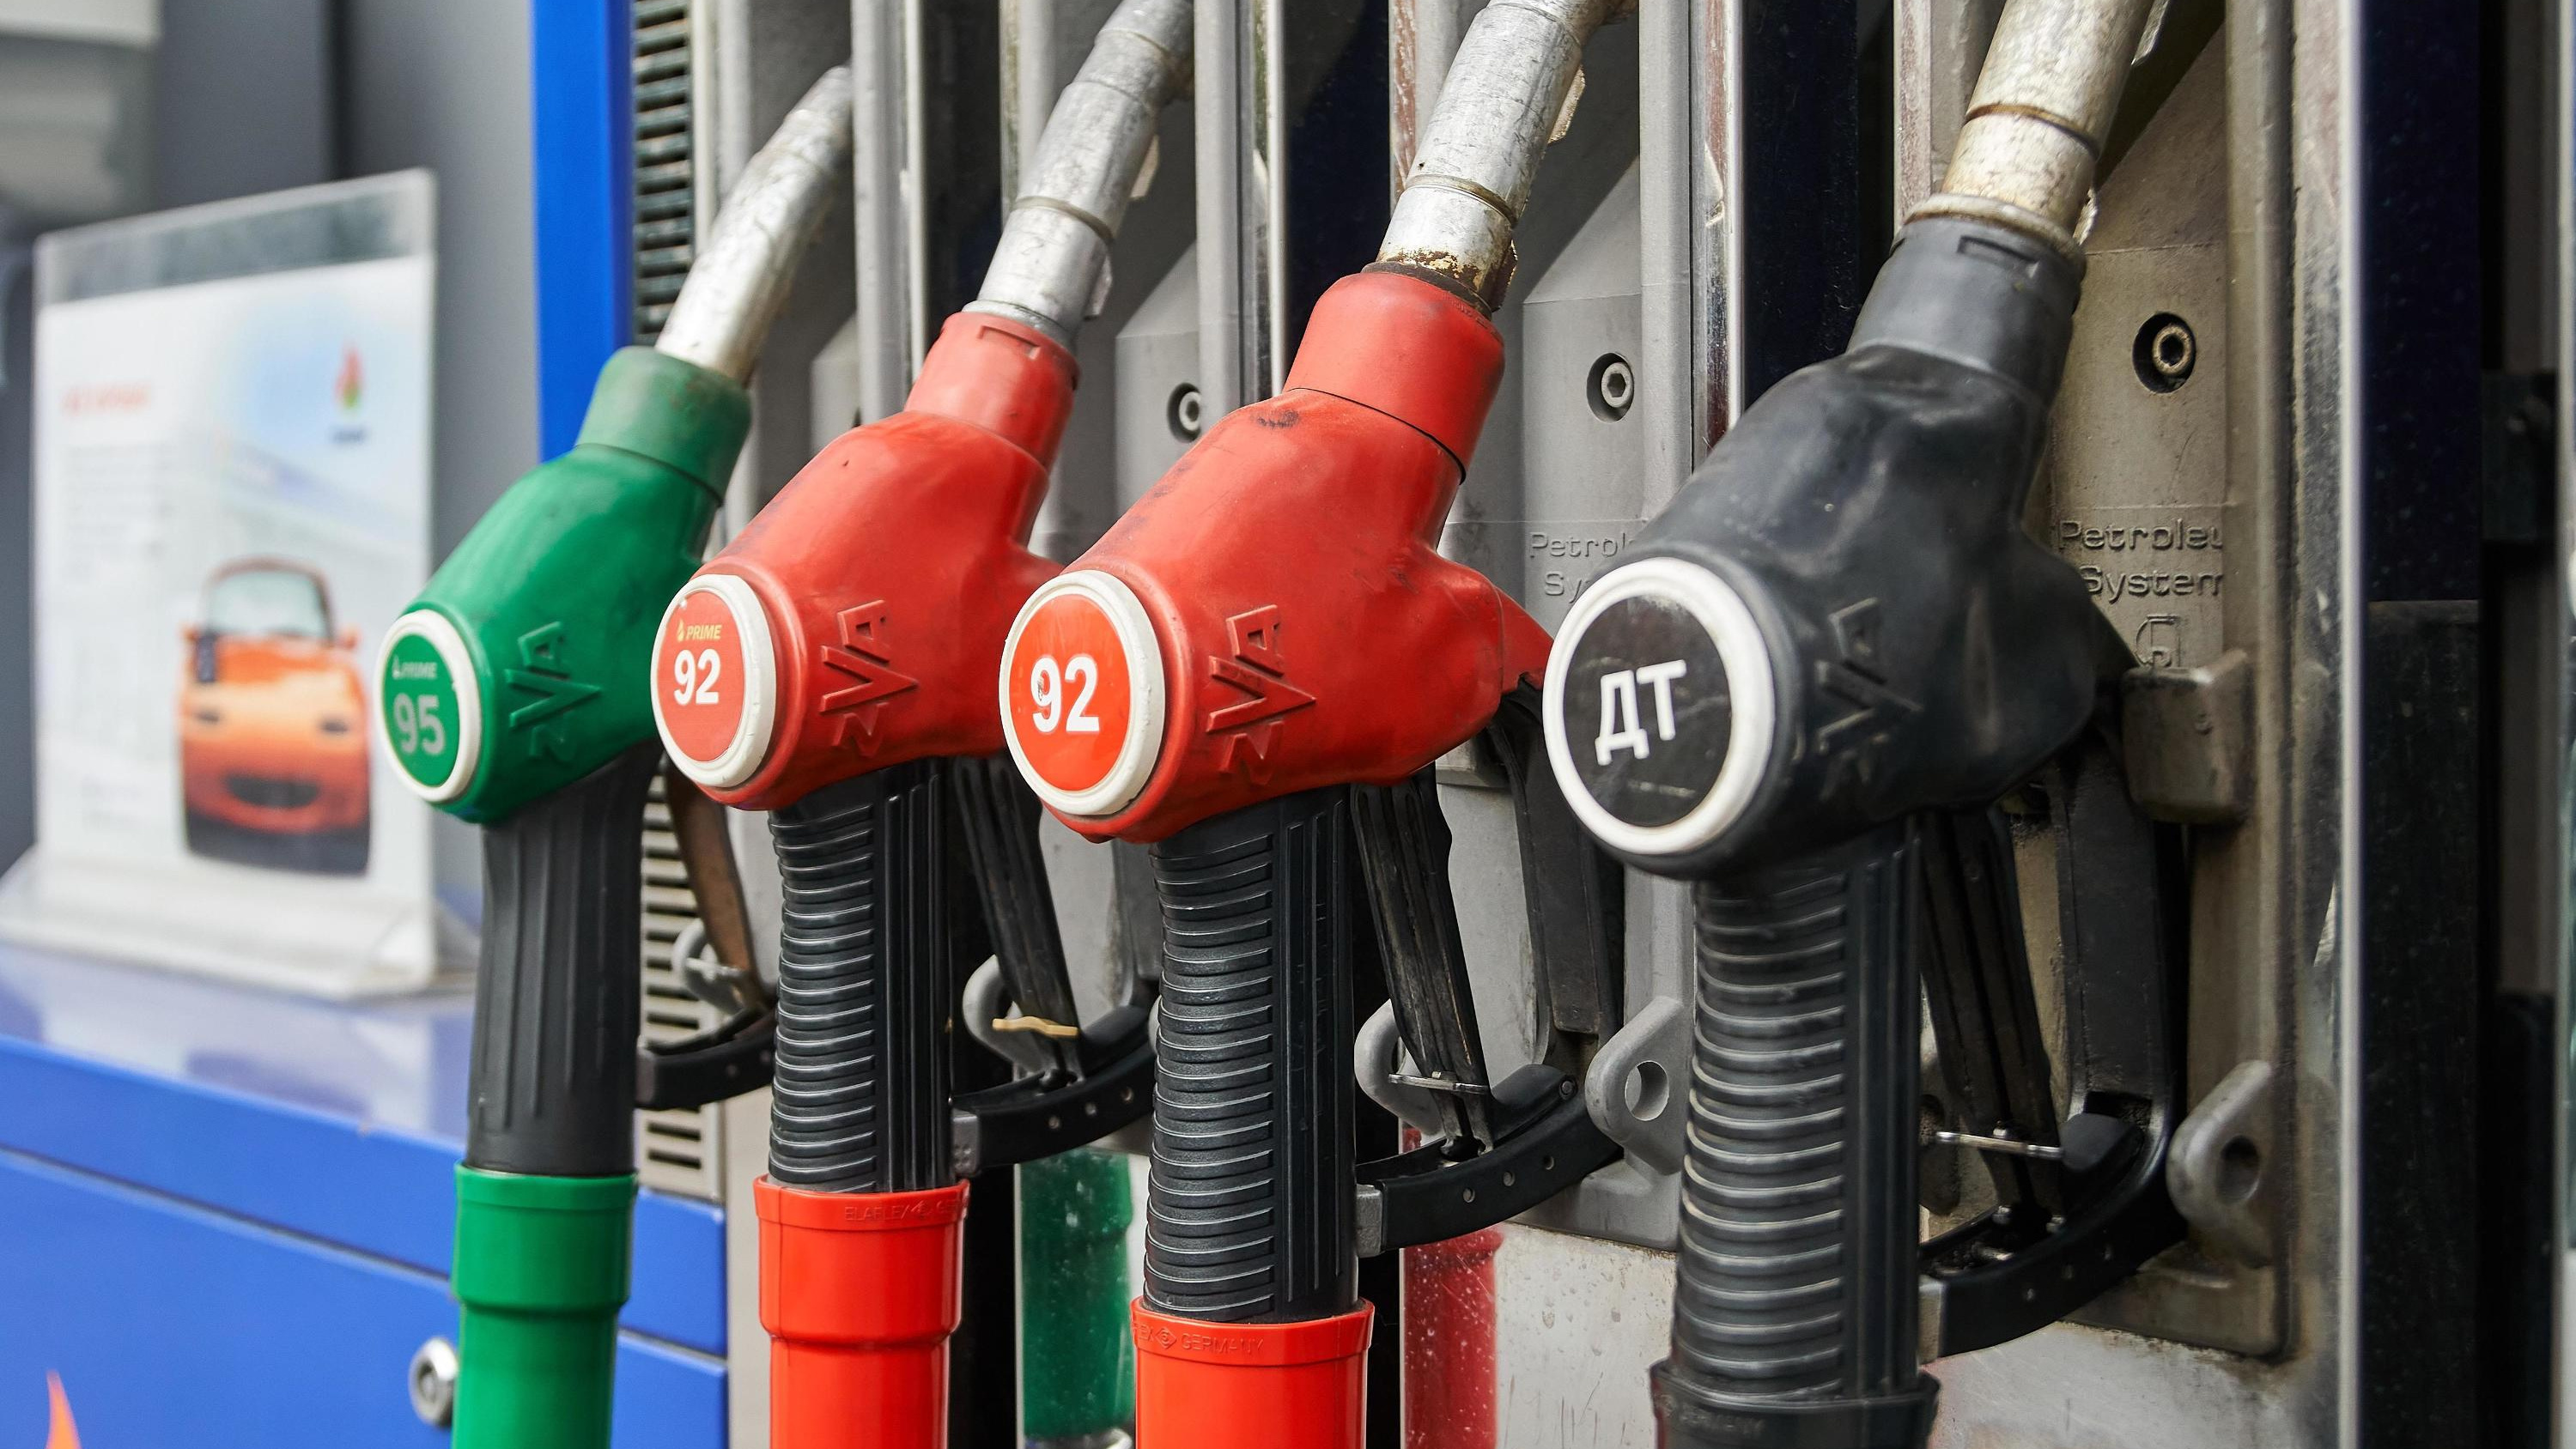 Сколько стоит бензин и дизель на заправках Кургана? Смотрим и сравниваем